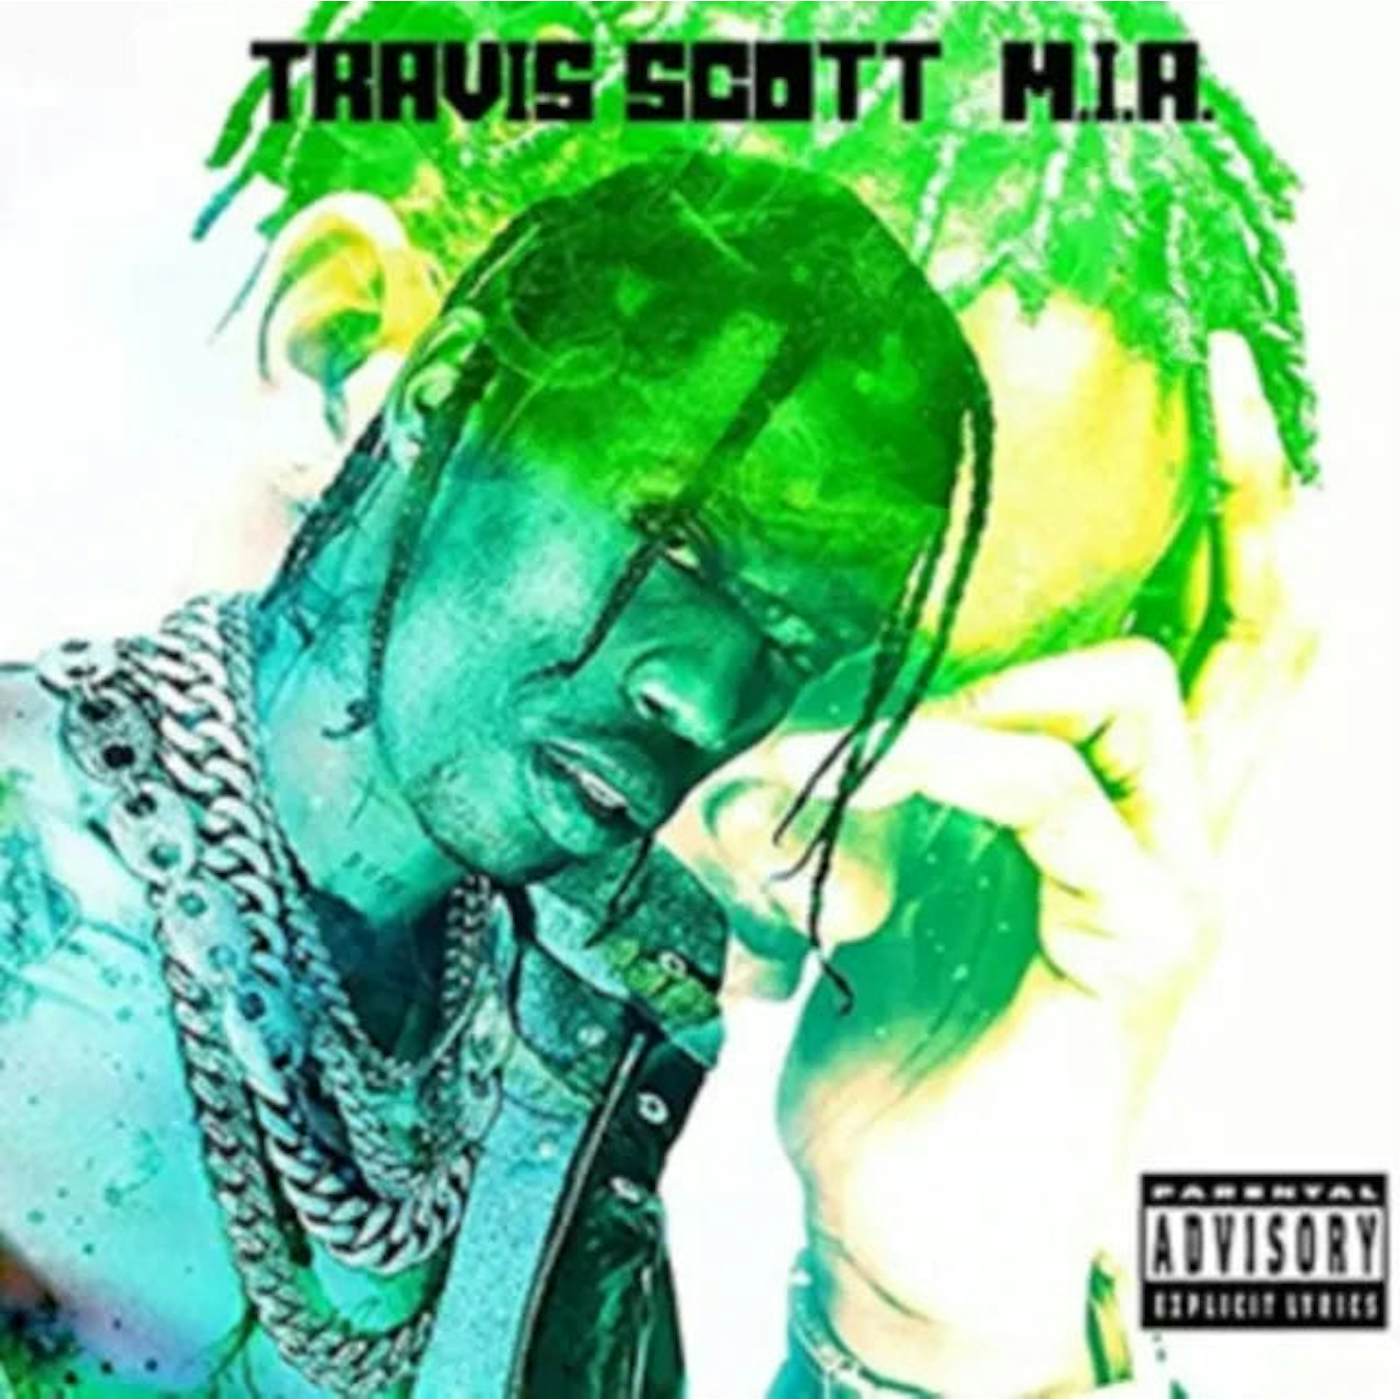 Travis Scott LP Vinyl Record - Astroworld $53.77